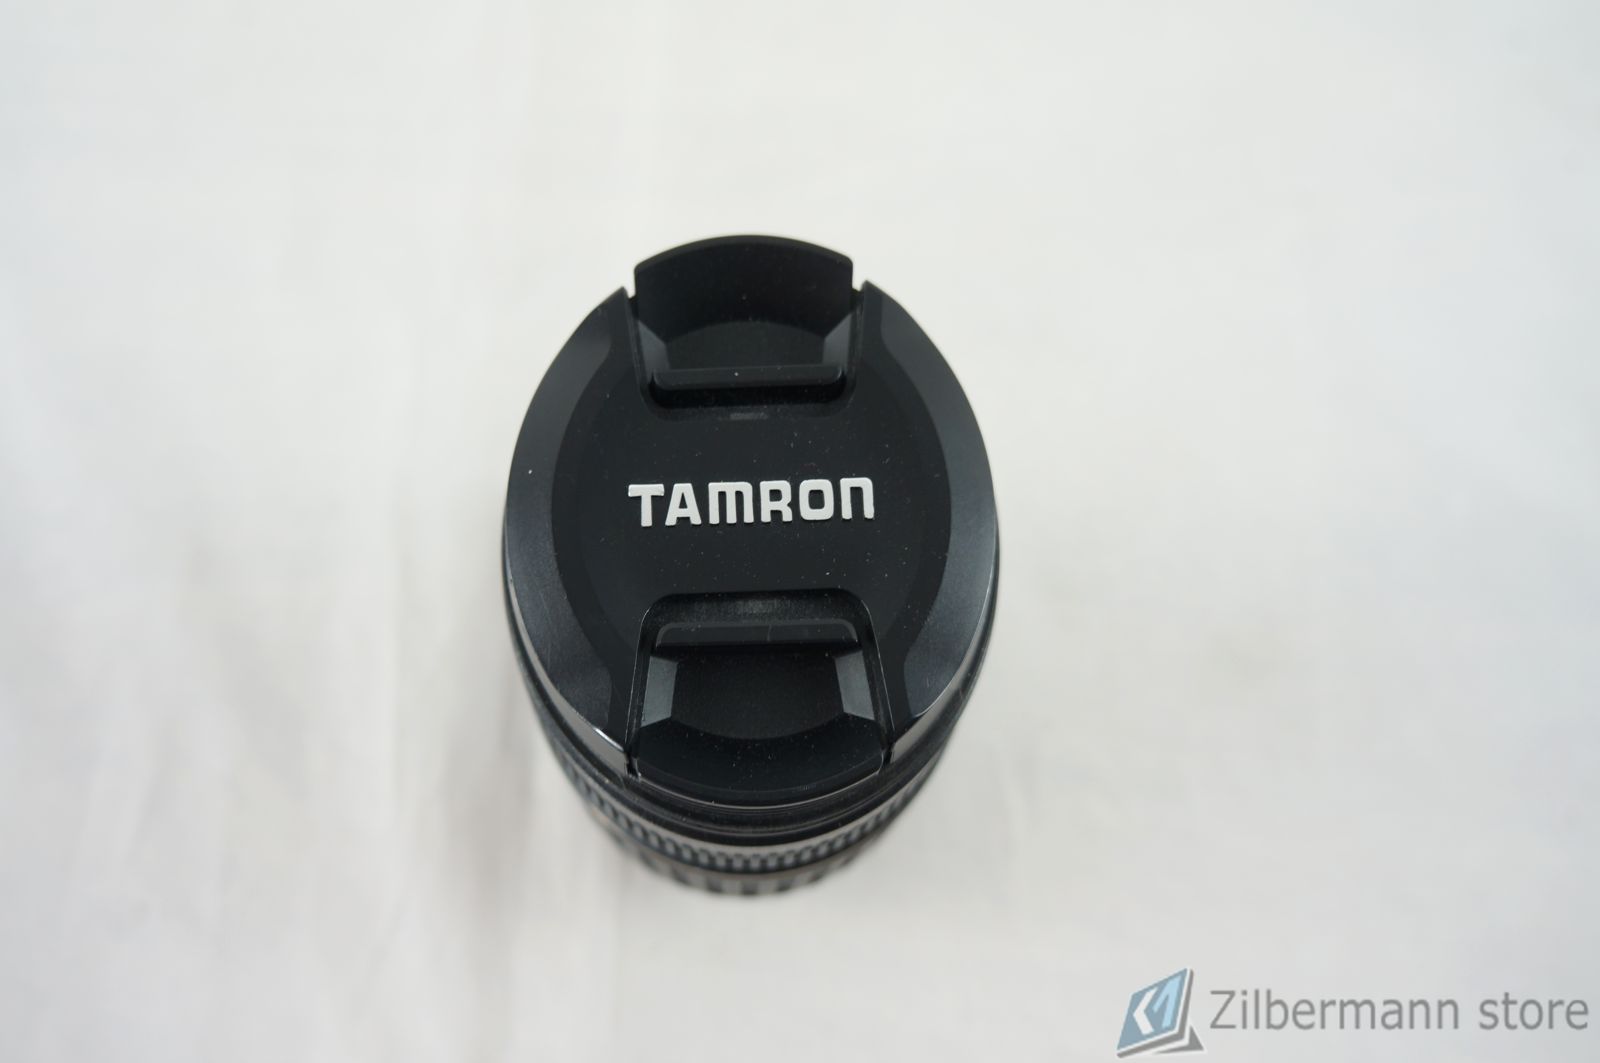 TAMRON_18-200mm_f-3.5-6.3_Macro_62mm_Objektiv_fur_Canon_EF_DSLR